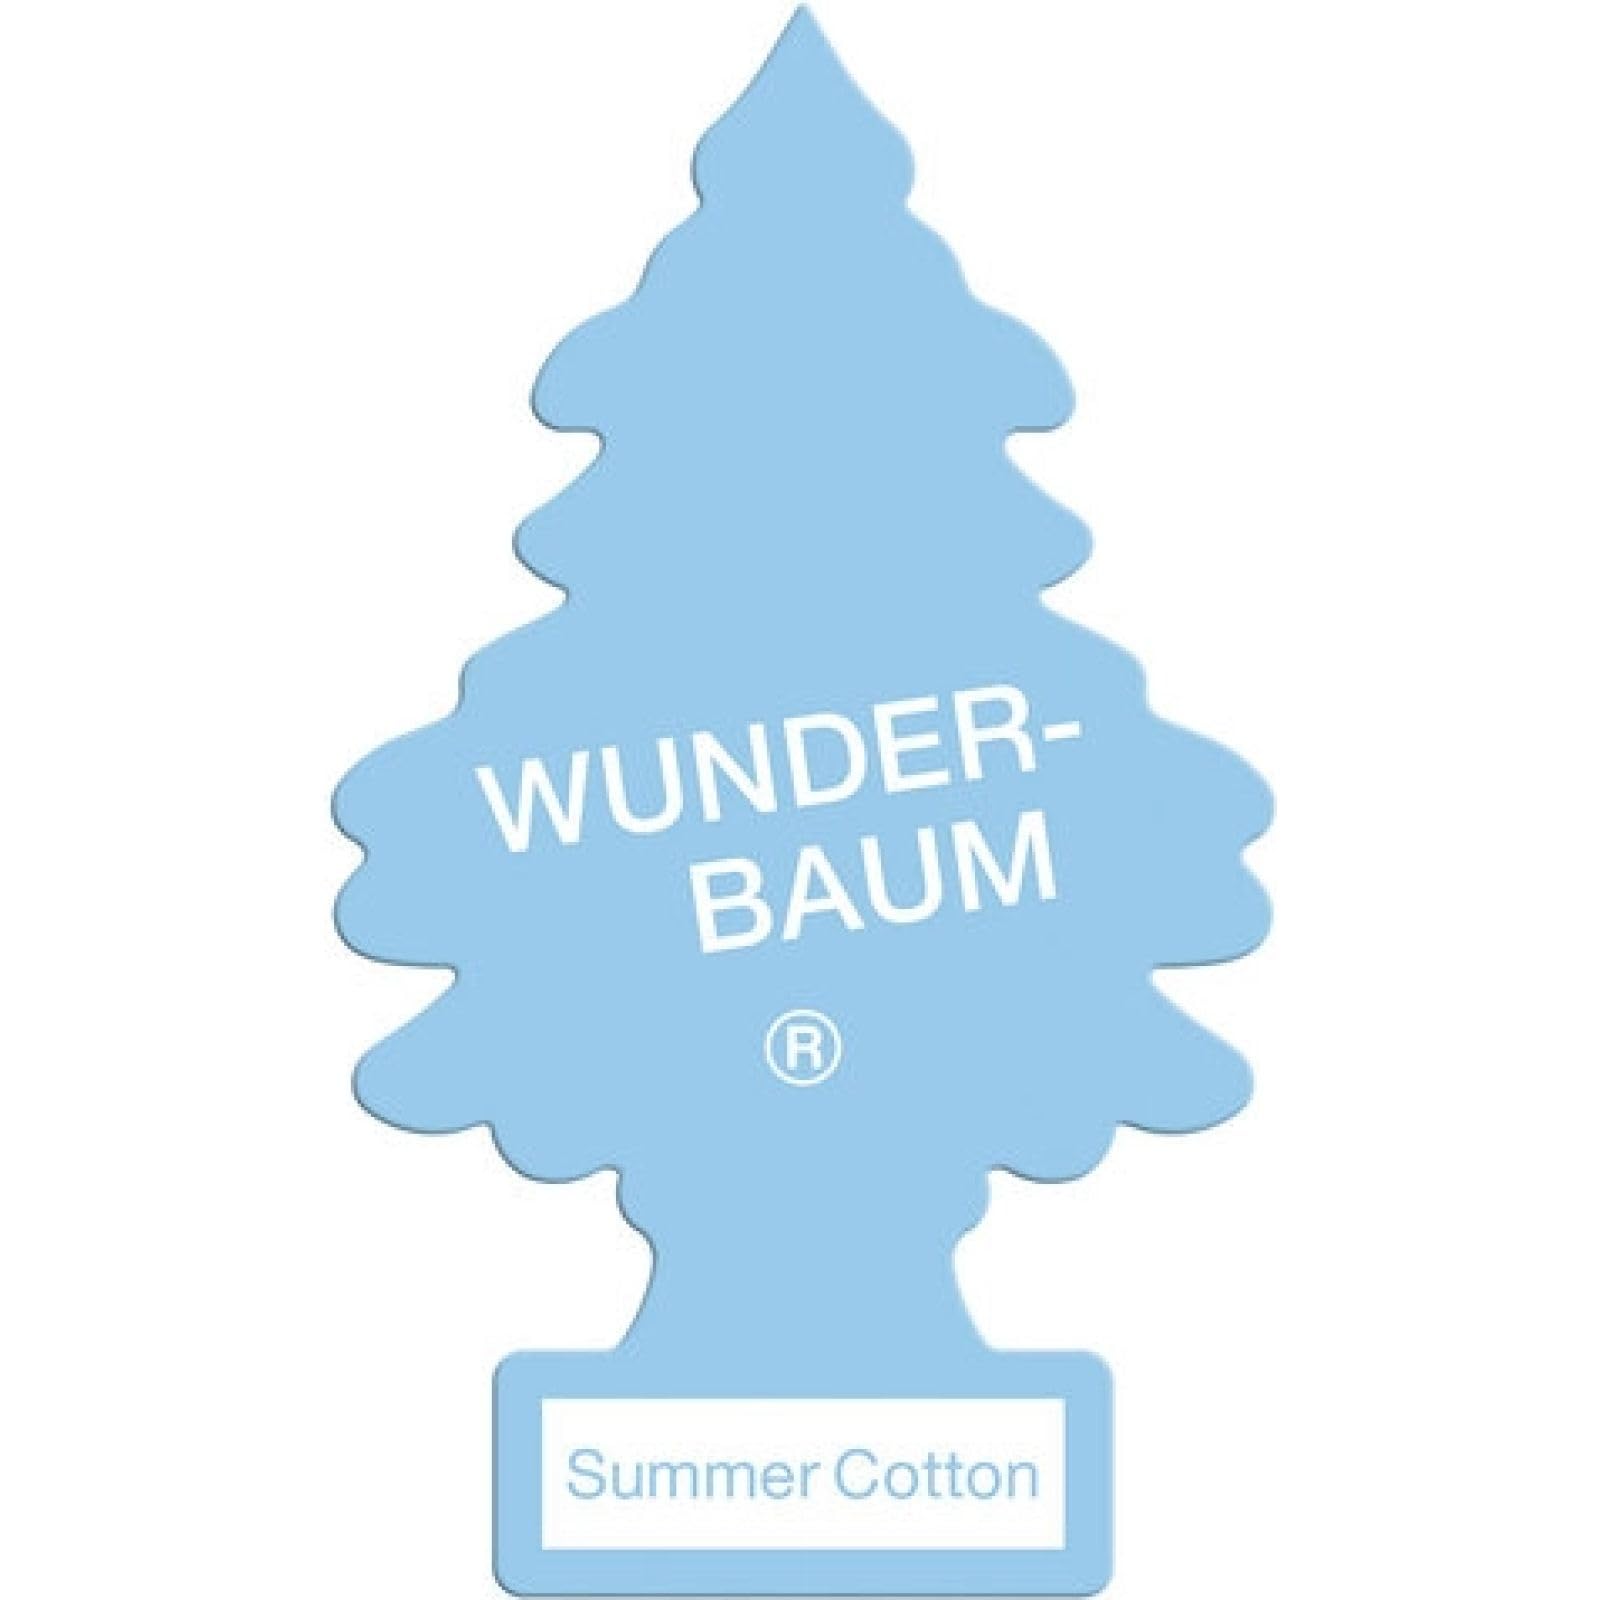 Wunderbaum Duftbaum Summer Cotton - Der Sommerduft 2017-24er Packung + 1 Duftbaum original Rose von Wunderbaum